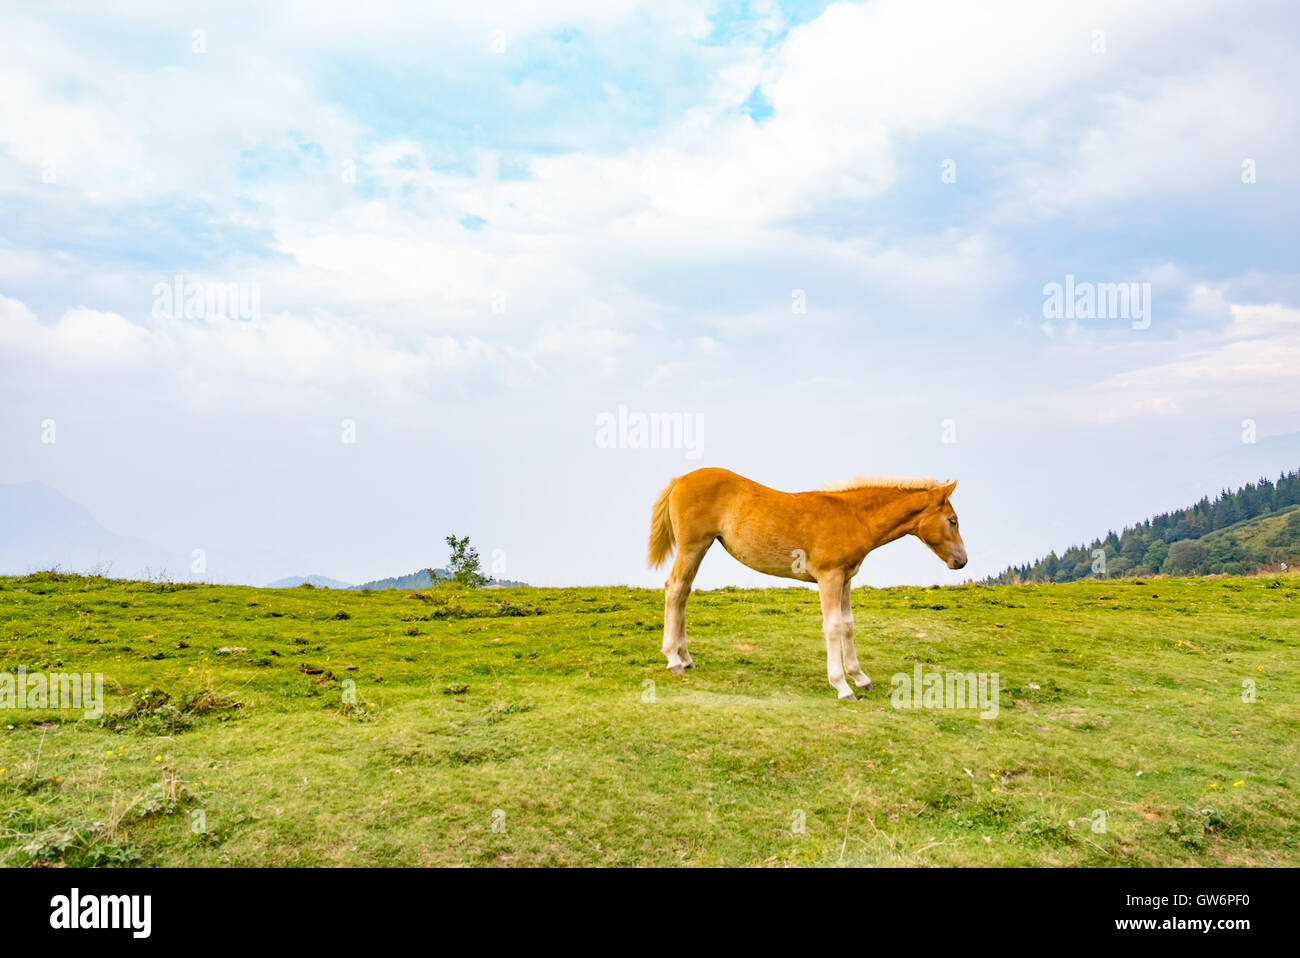 Cheval sauvage dans un paysage de montagne Banque D'Images